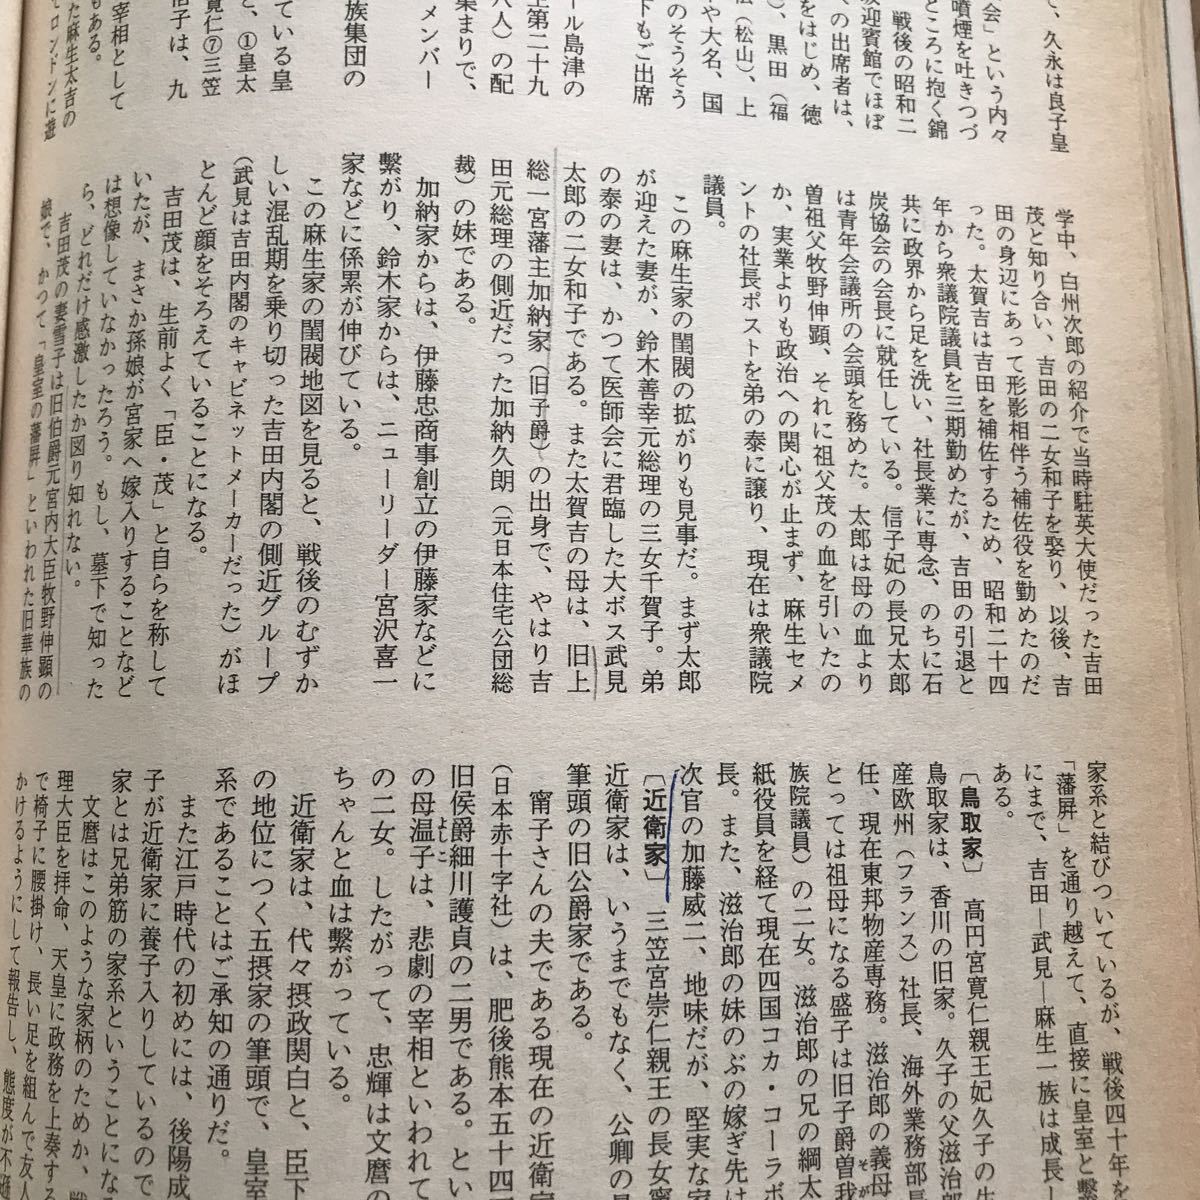 別冊歴史読本 49 天皇家と日本の名族 歴史を動かした連綿たる名家の血脈 第12巻第3号 3ページにボールペンと鉛筆による書き込み有り_画像6